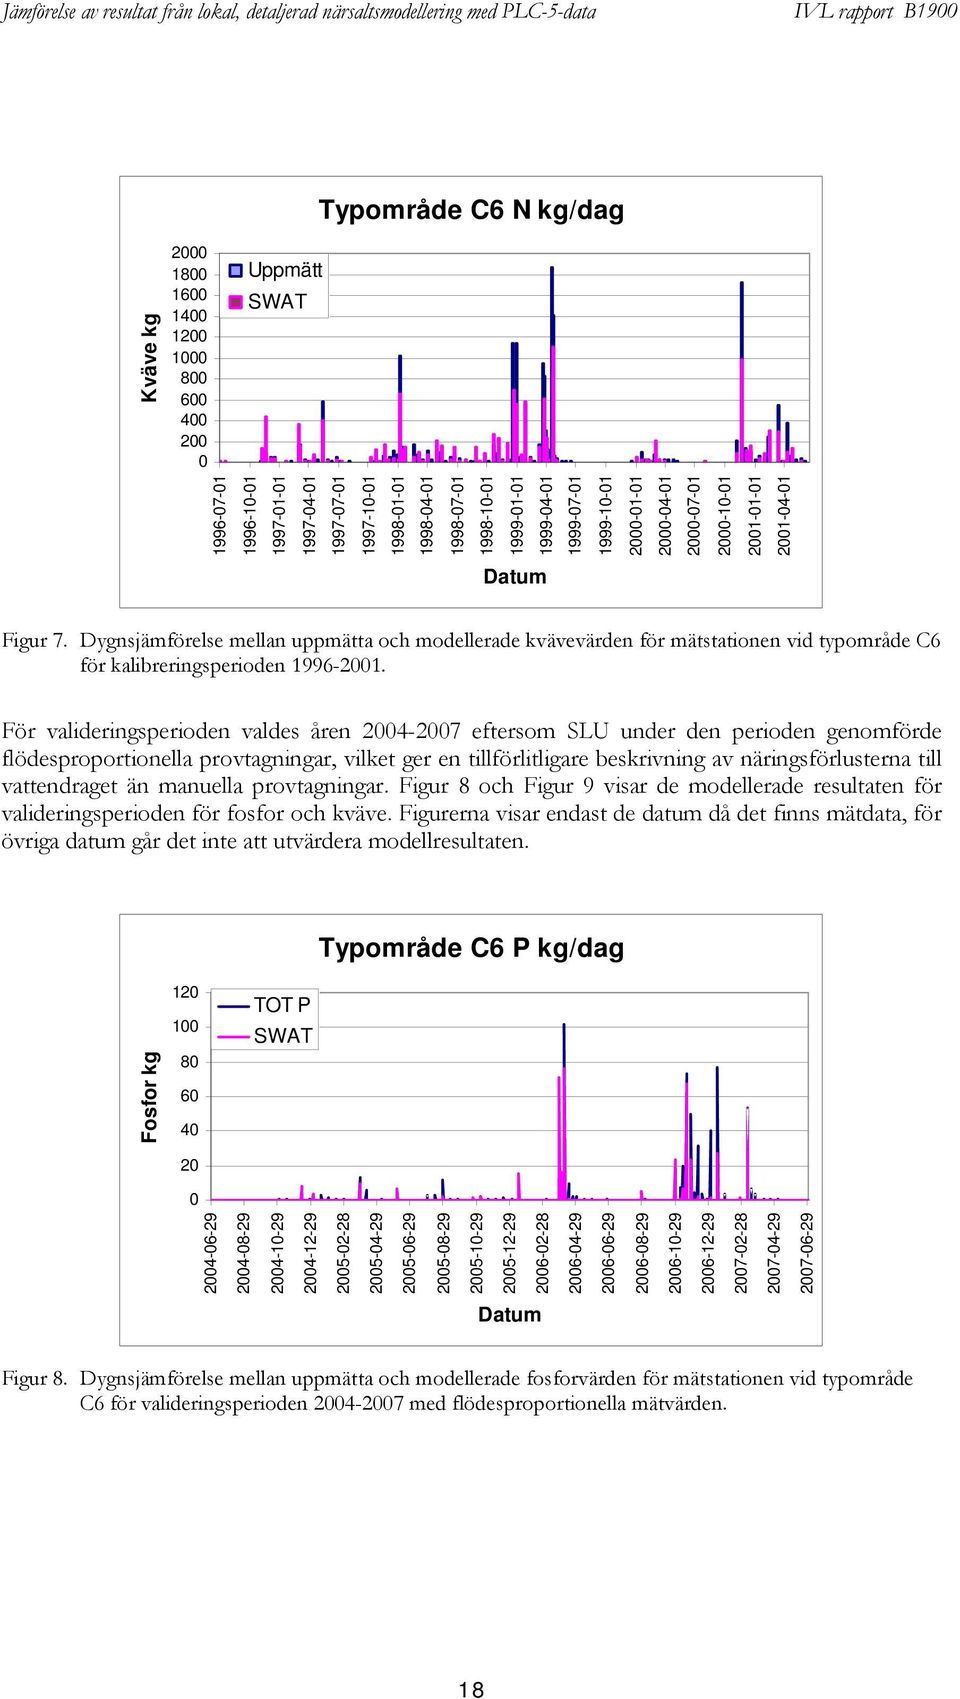 Dygnsjämförelse mellan uppmätta och modellerade kvävevärden för mätstationen vid typområde C6 för kalibreringsperioden 1996-2001.